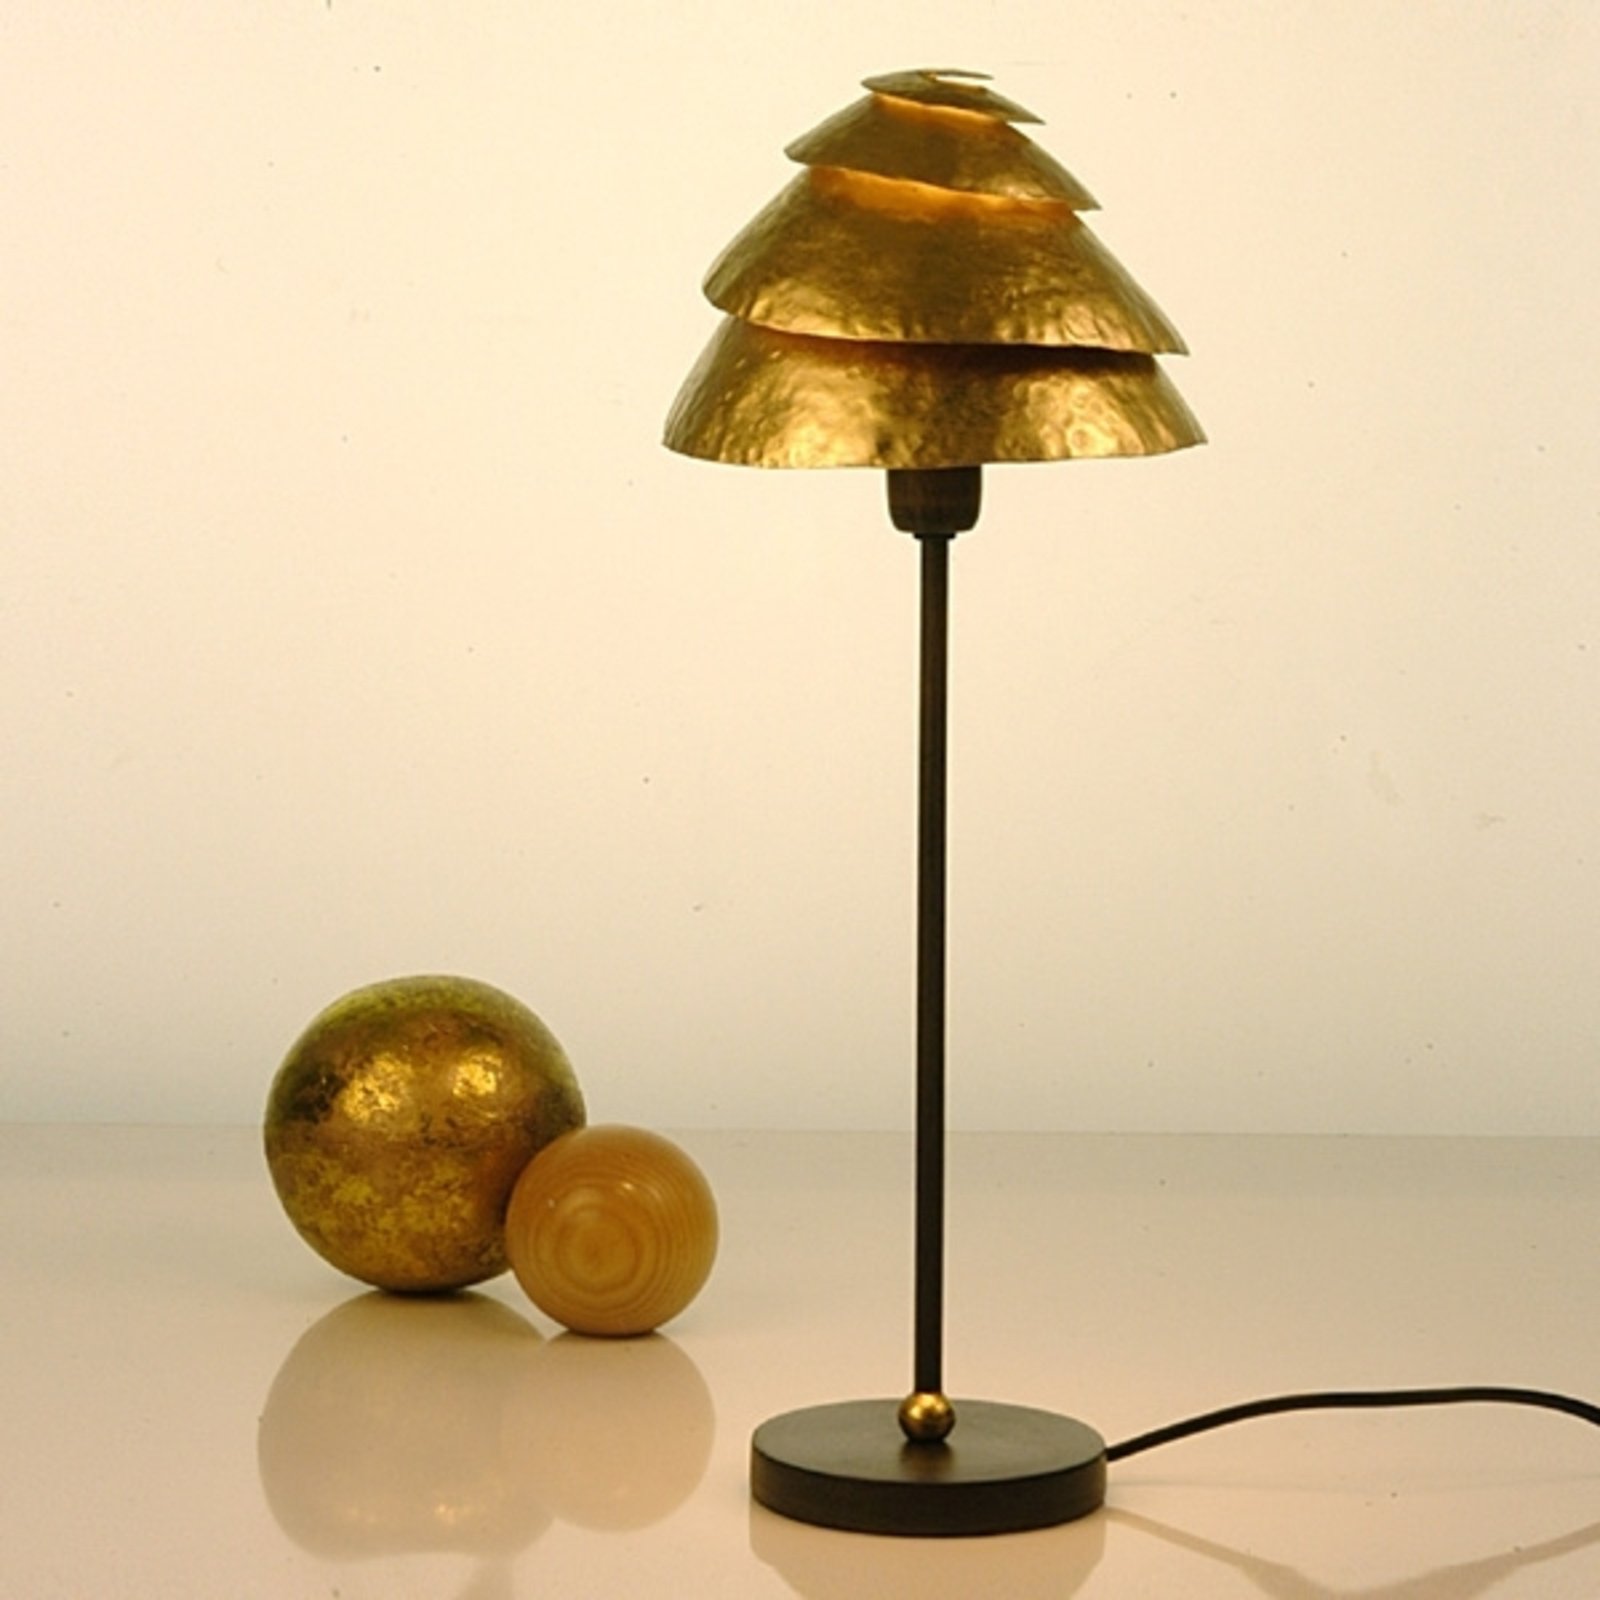 Snail One asztali lámpa barna-arany színben